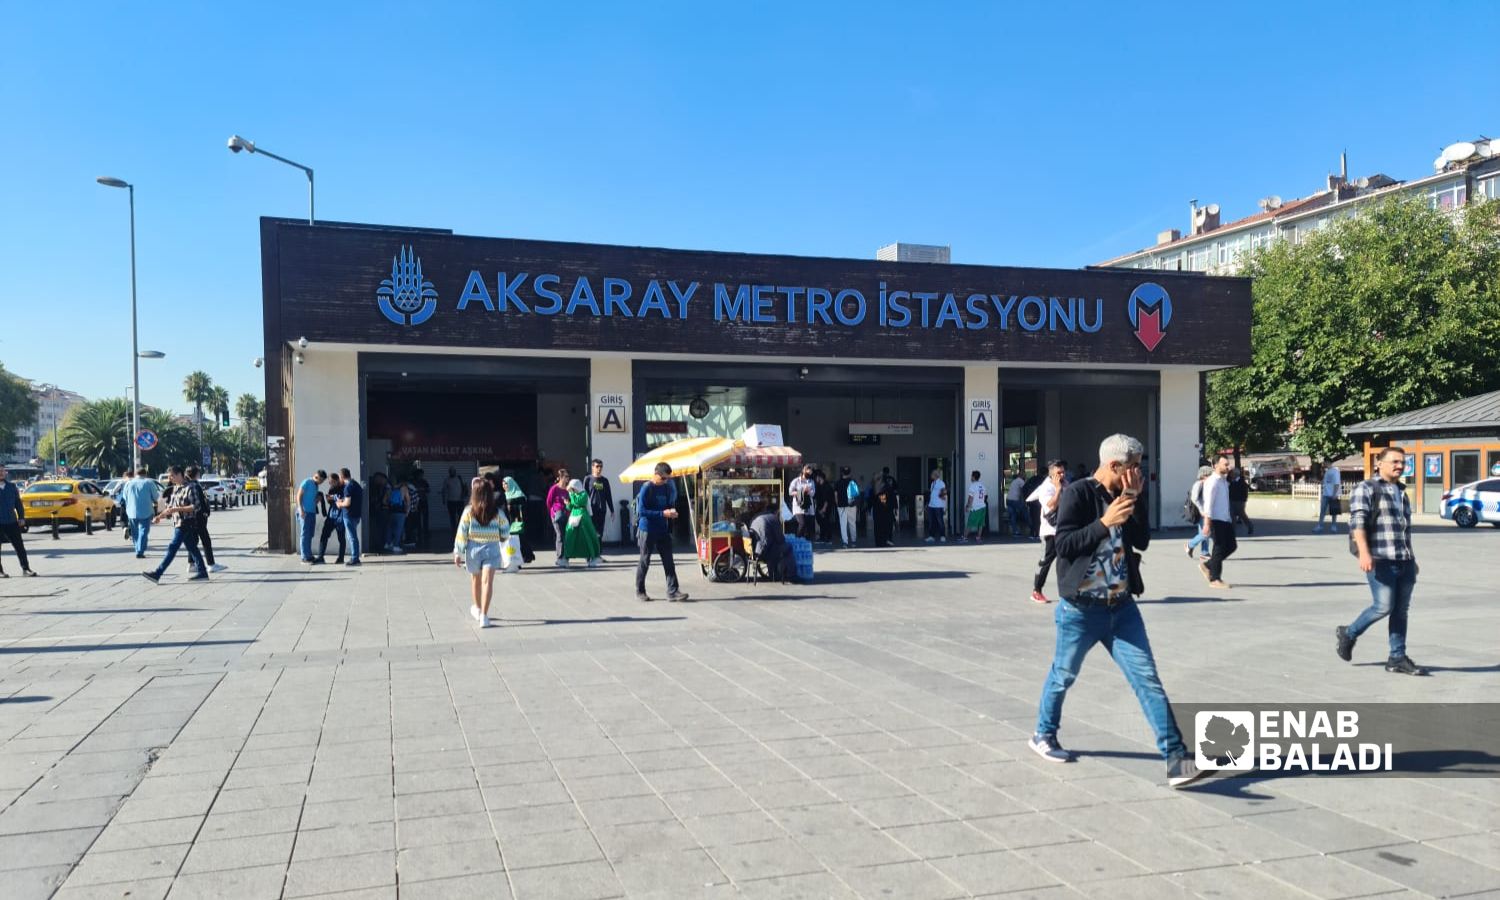 محطة "ميترو أكسراي" في مدينة اسطنبول التركية- 25 من أيلول 2022 (عنب بلدي)